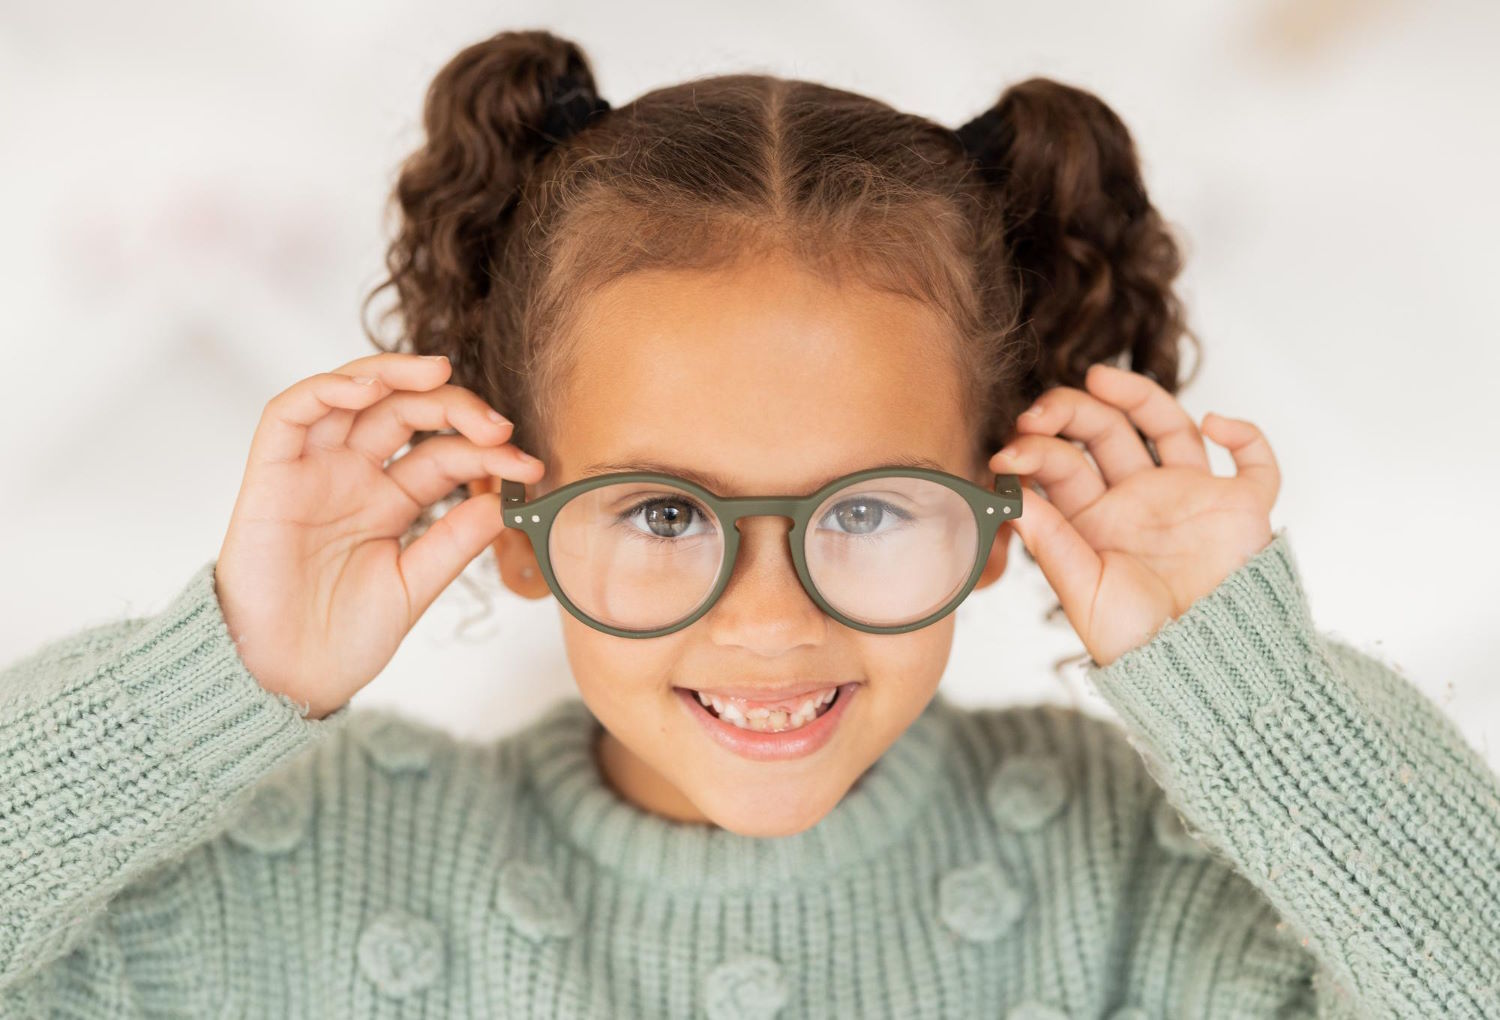 Dobór odpowiednich okularów korekcyjnych dla dziecka to niezwykle ważna decyzja, która ma ogromne znaczenie dla jego wzroku i komfortu